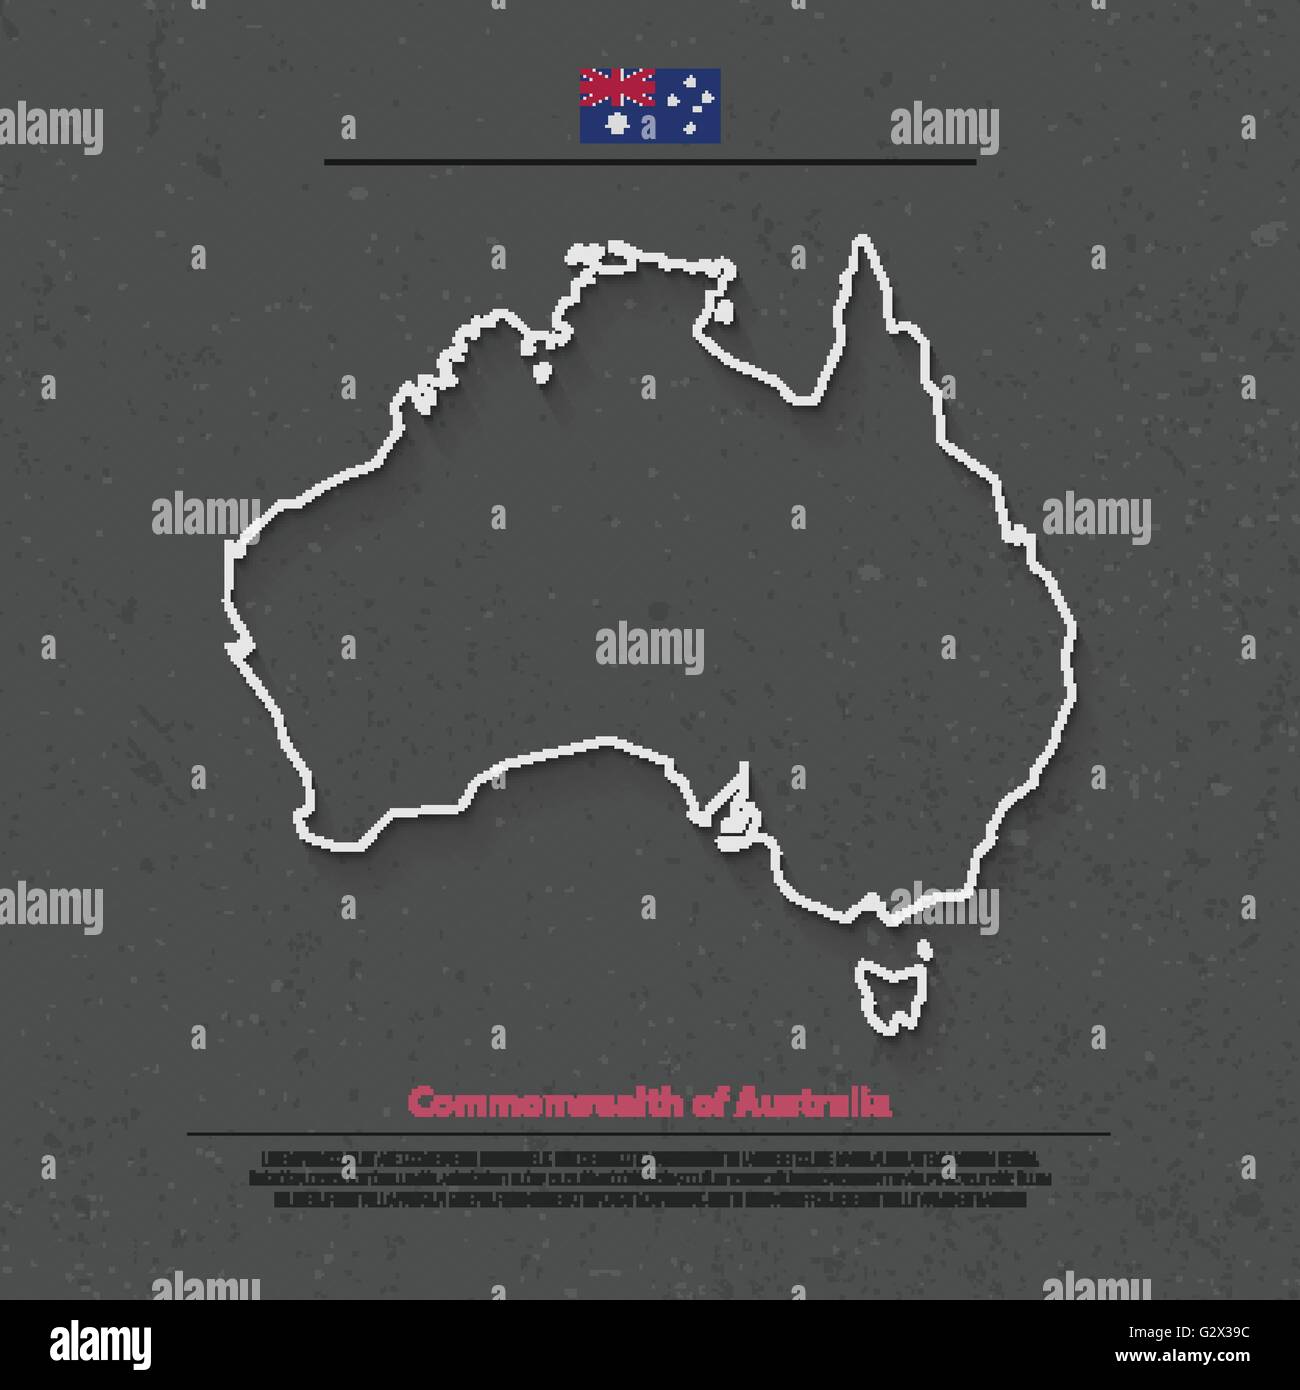 Commonwealth of Australia isoliert Karte und offizielle Flaggen-Icons. Australischen Kontinent dünne Linie Vektorkarte. Aussie geog Stock Vektor